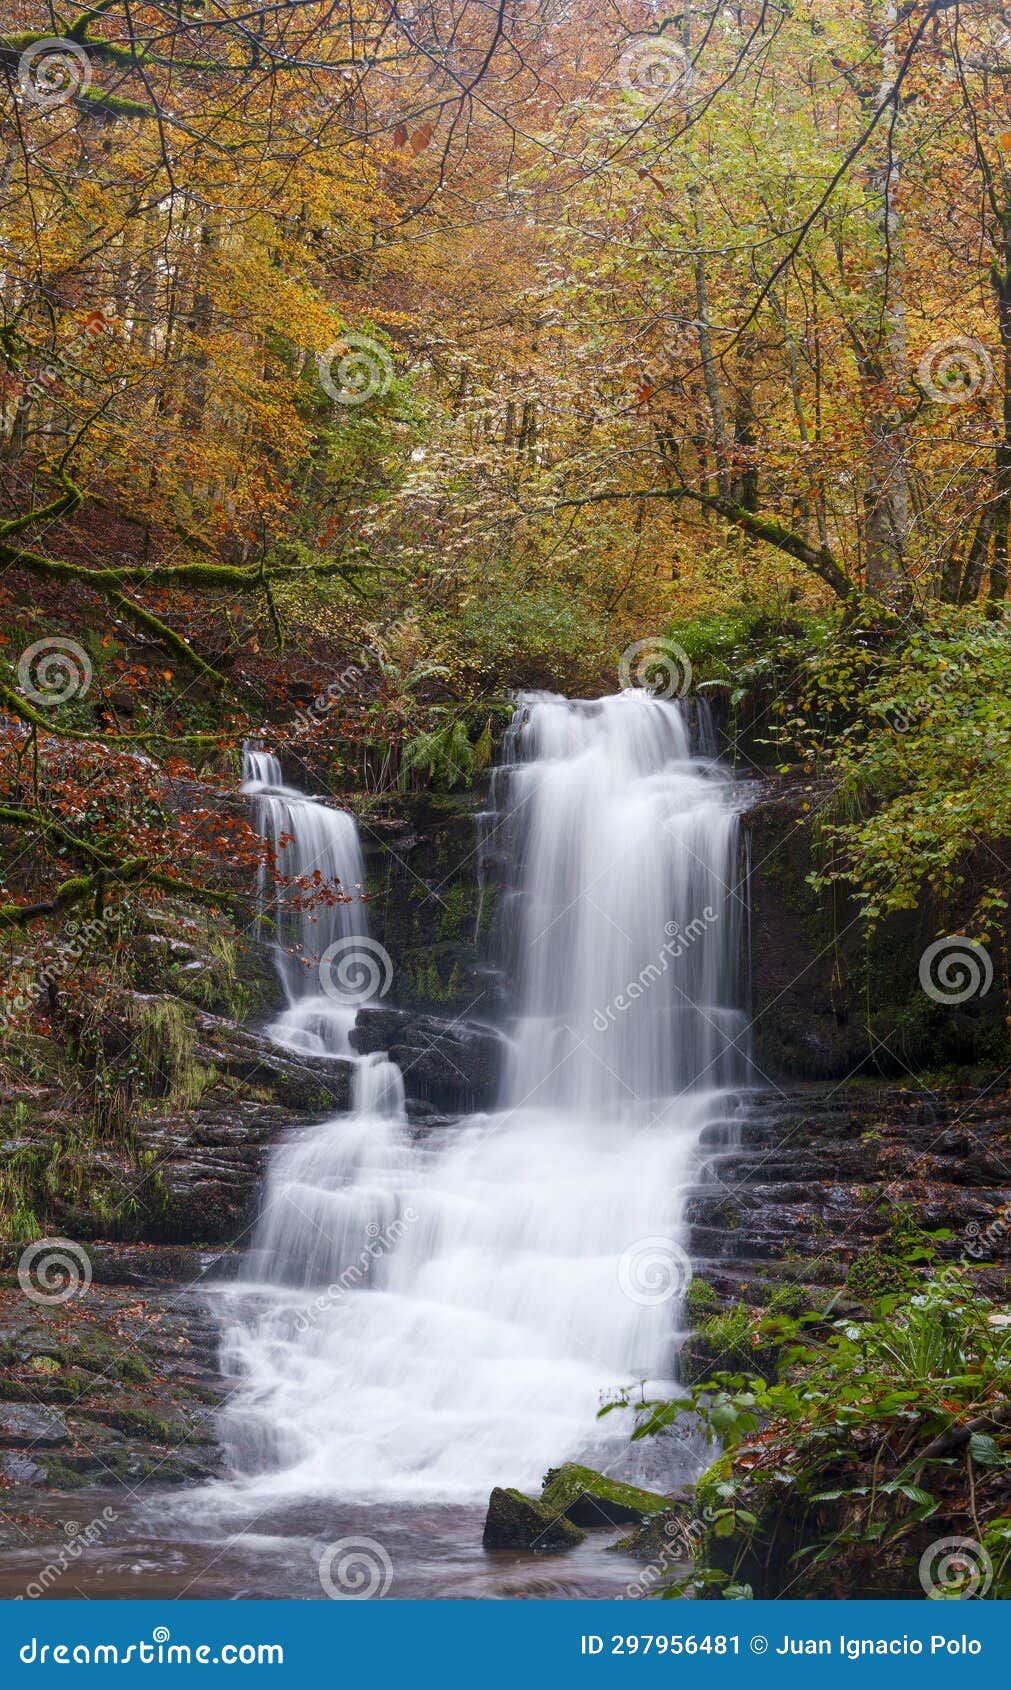 irurrekaeta waterfall, autumn in the irurrekaeta waterfall, arce valley, navarre